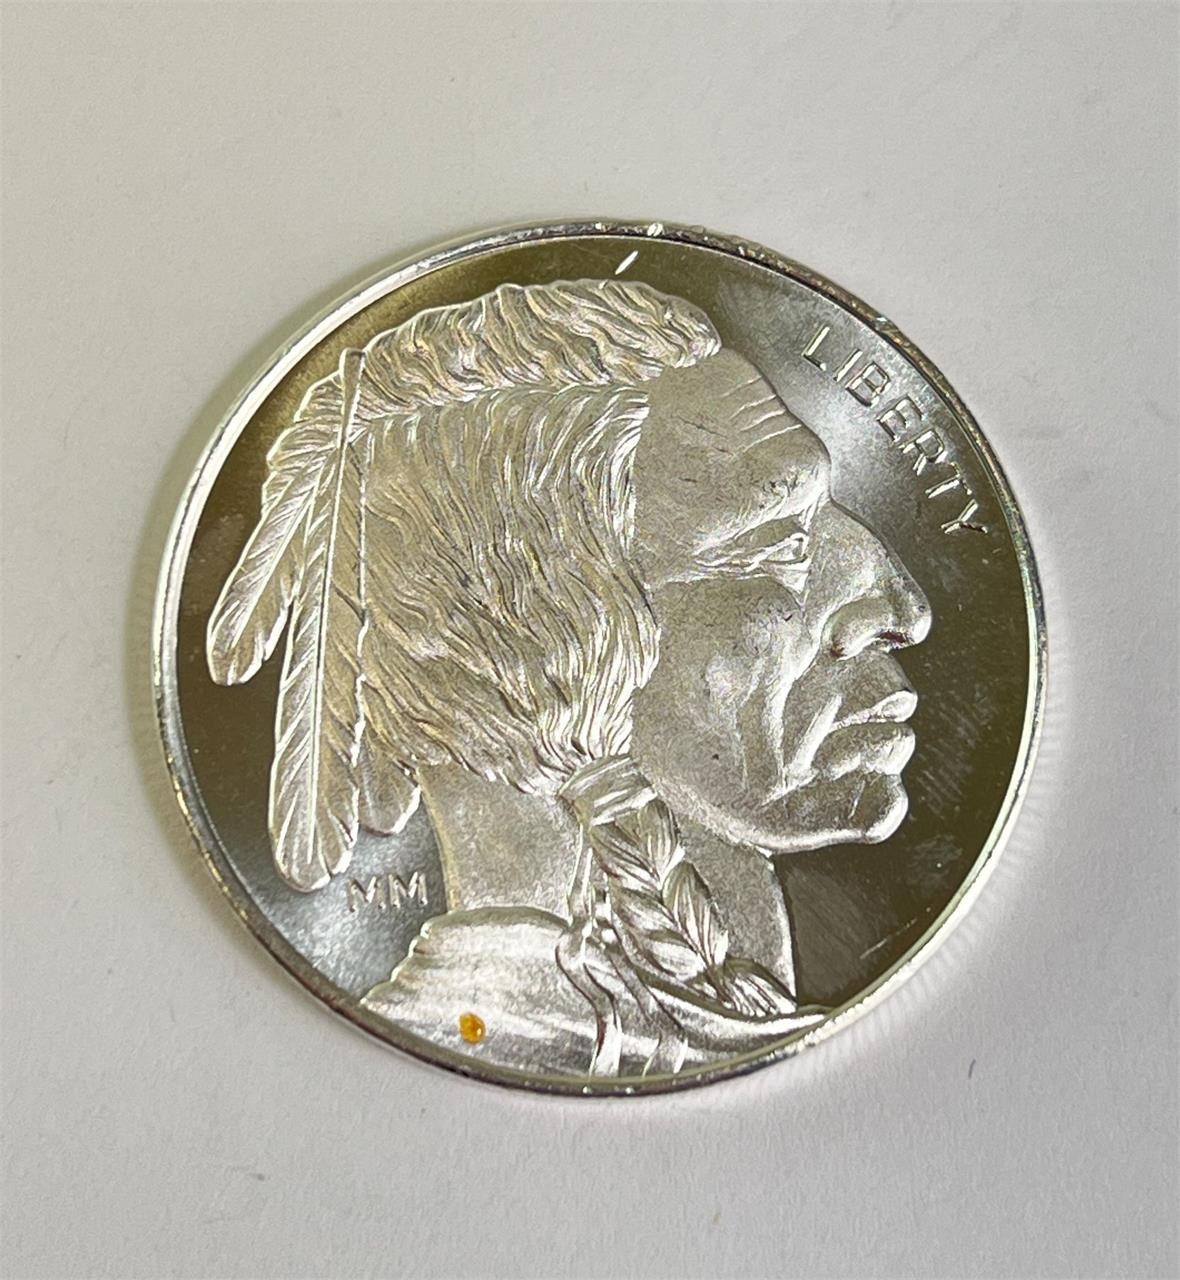 1 Troy Ounce .999 Silver Buffalo Nickle Coin